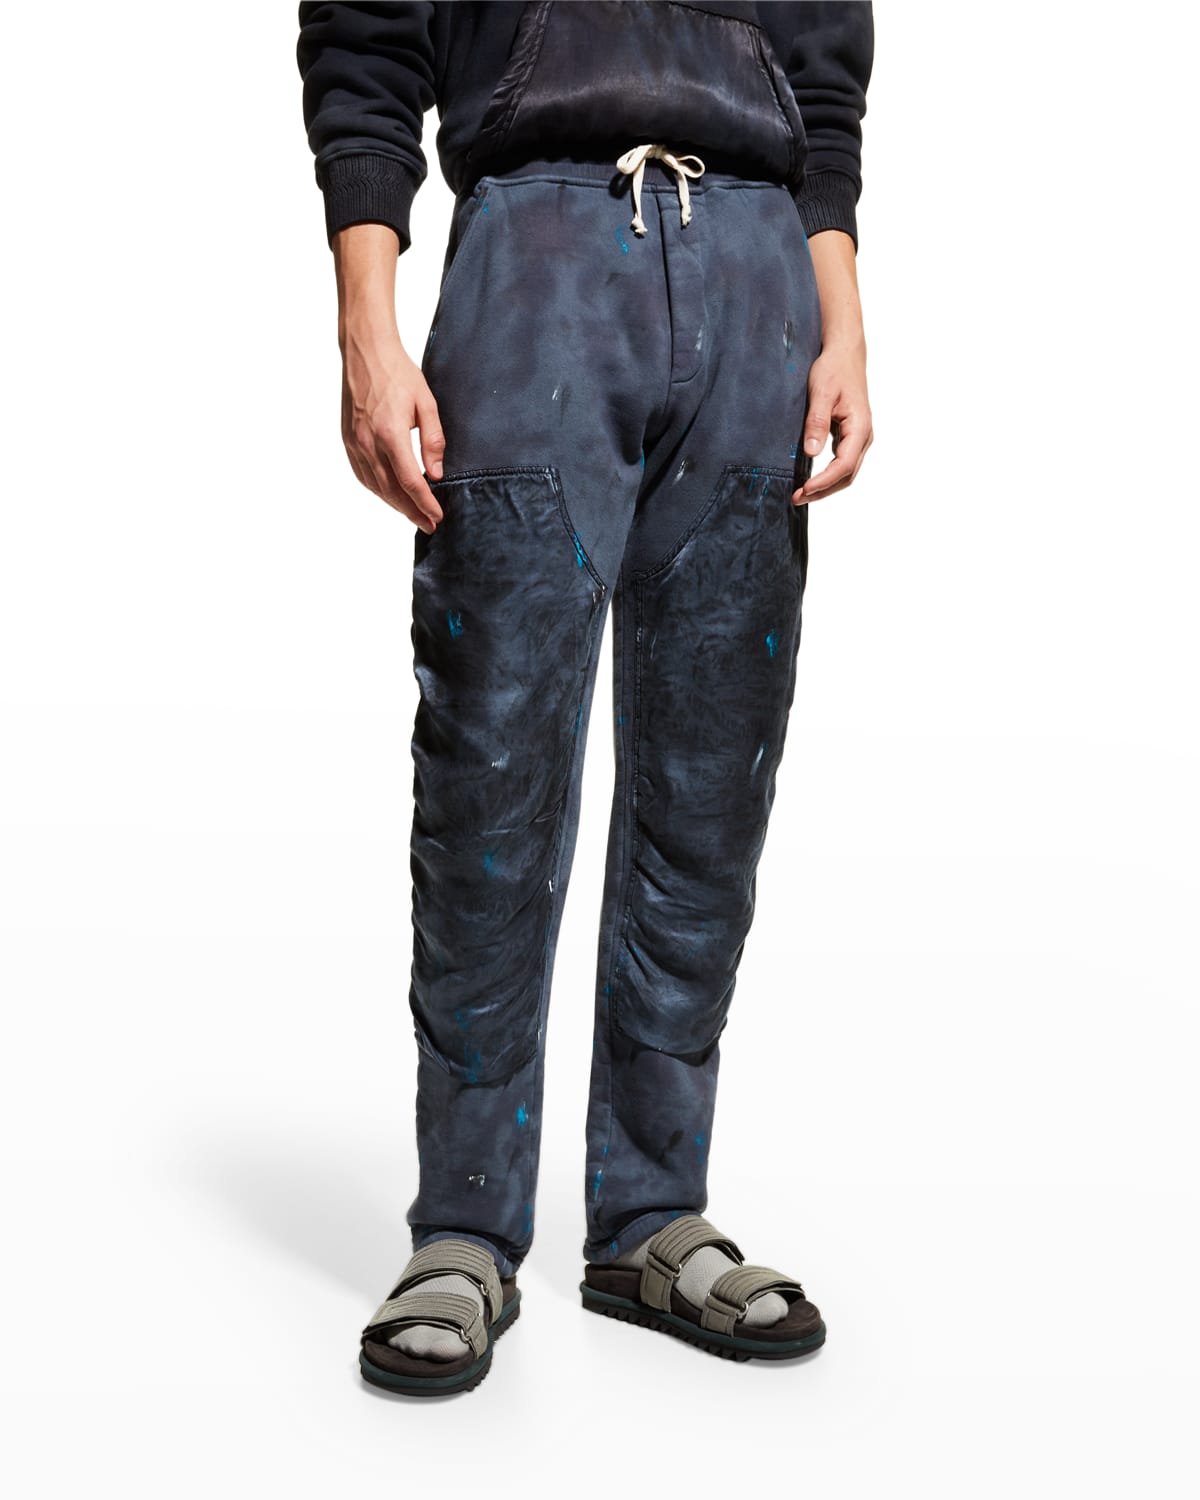 Lost Daze Men's Paint-Splatter Sweatpants